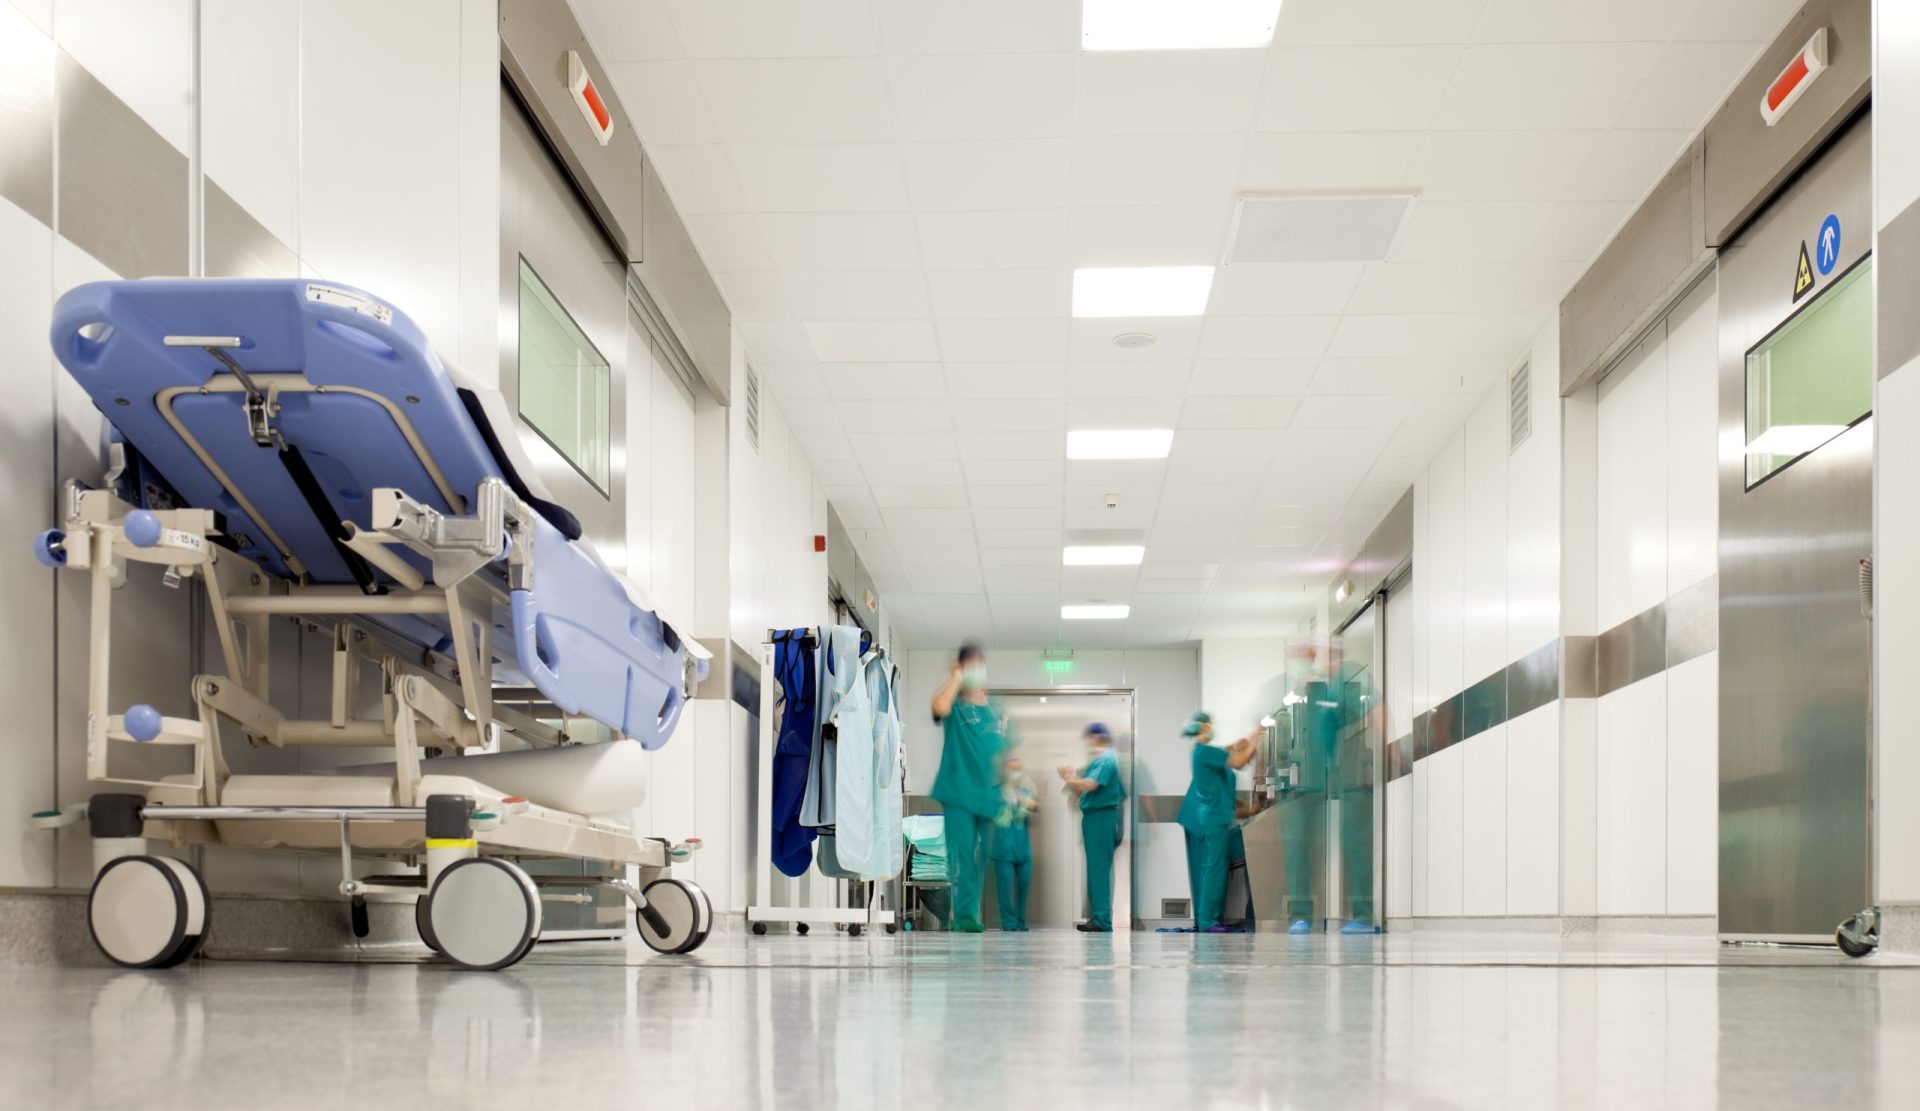 26 doentes em isolamento por bactéria multirresistente no hospital de Penafiel